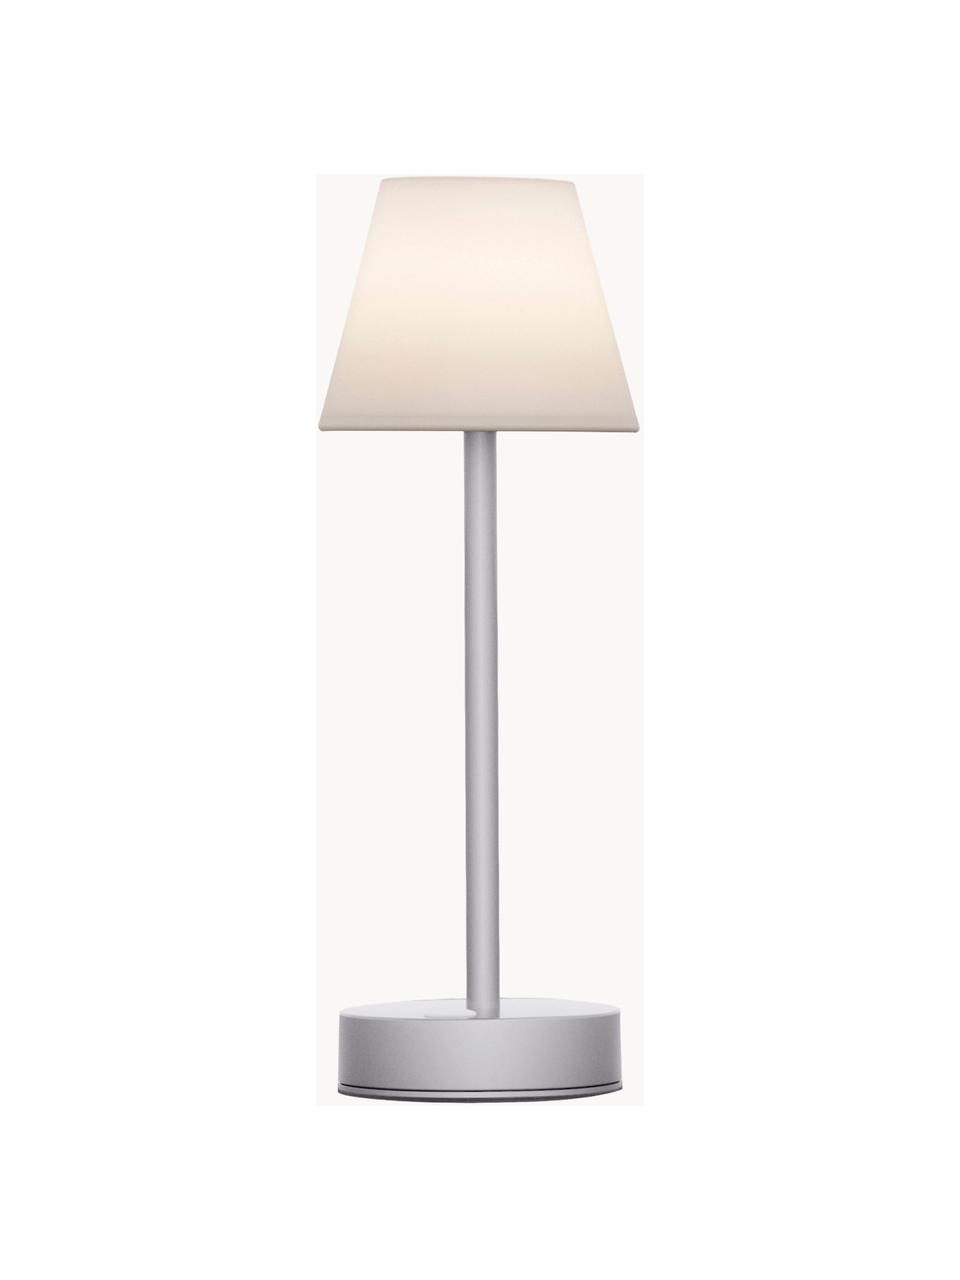 Přenosná stmívatelná venkovní stolní LED lampa s dotykovou funkcí Lola, Bílá, stříbrná, Ø 11 cm, V 32 cm